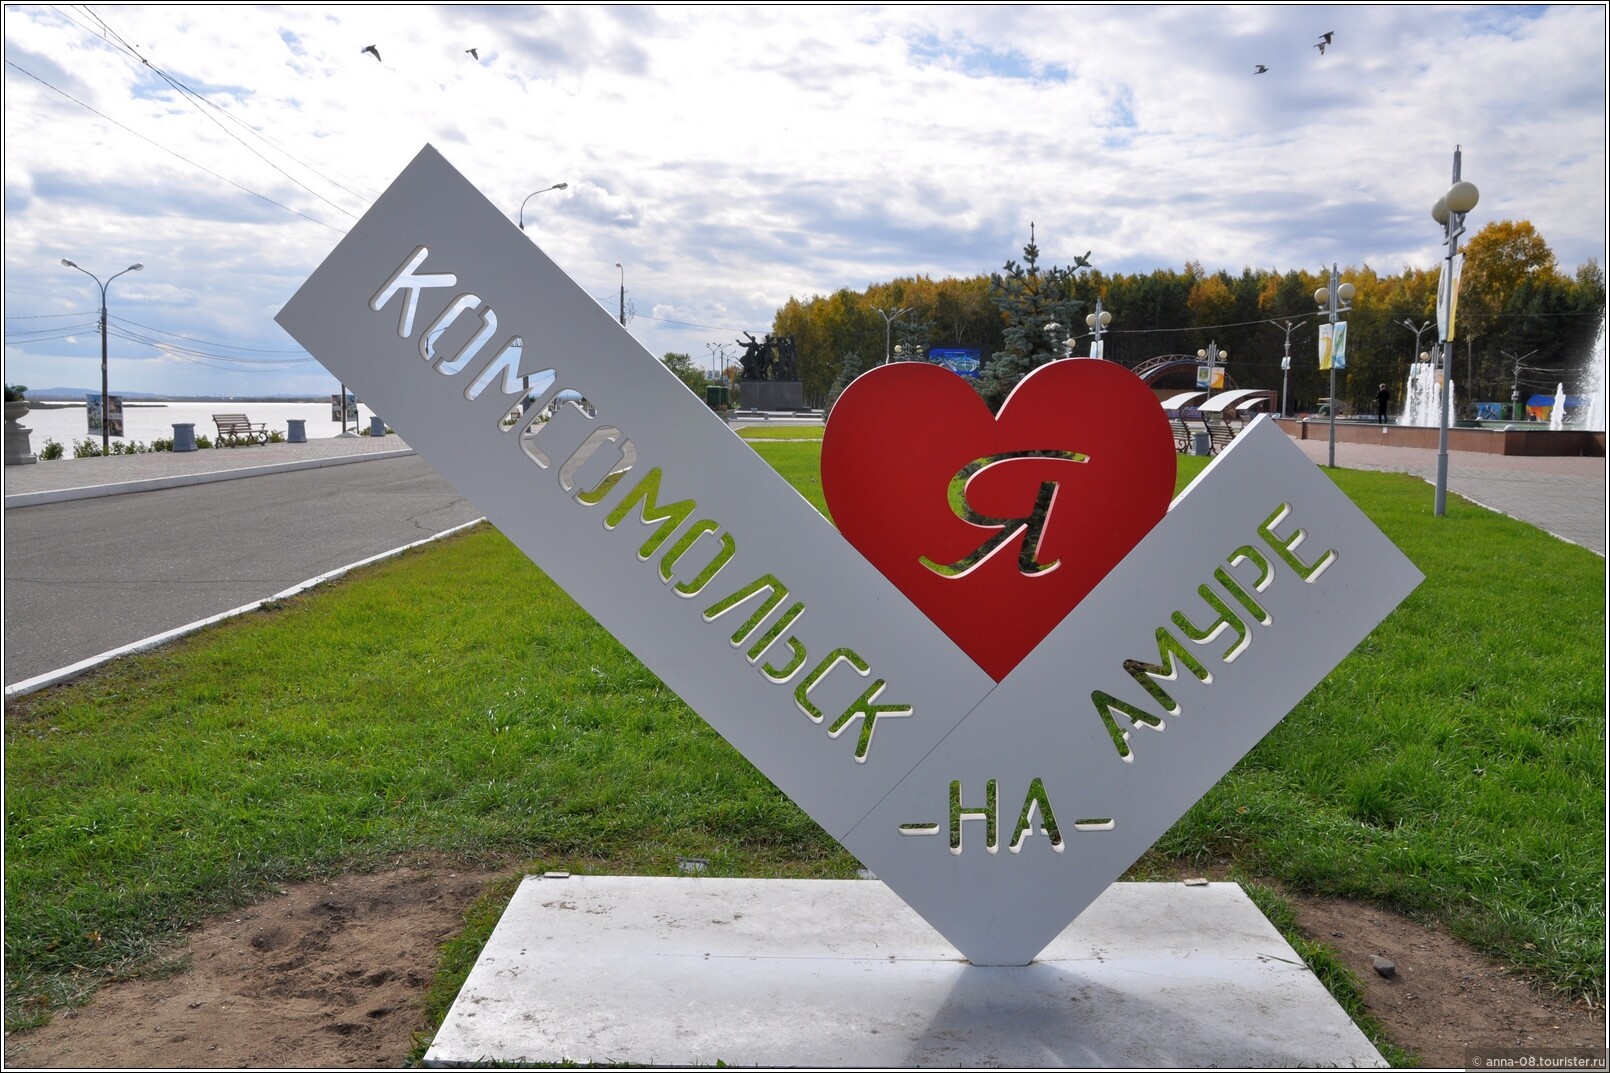 Цуефа комсомольск на амуре. Я люблю Комсомольск на Амуре арт объект. Комсомольск-на -Амуре город юности. Картинки города Комсомольска на Амуре.